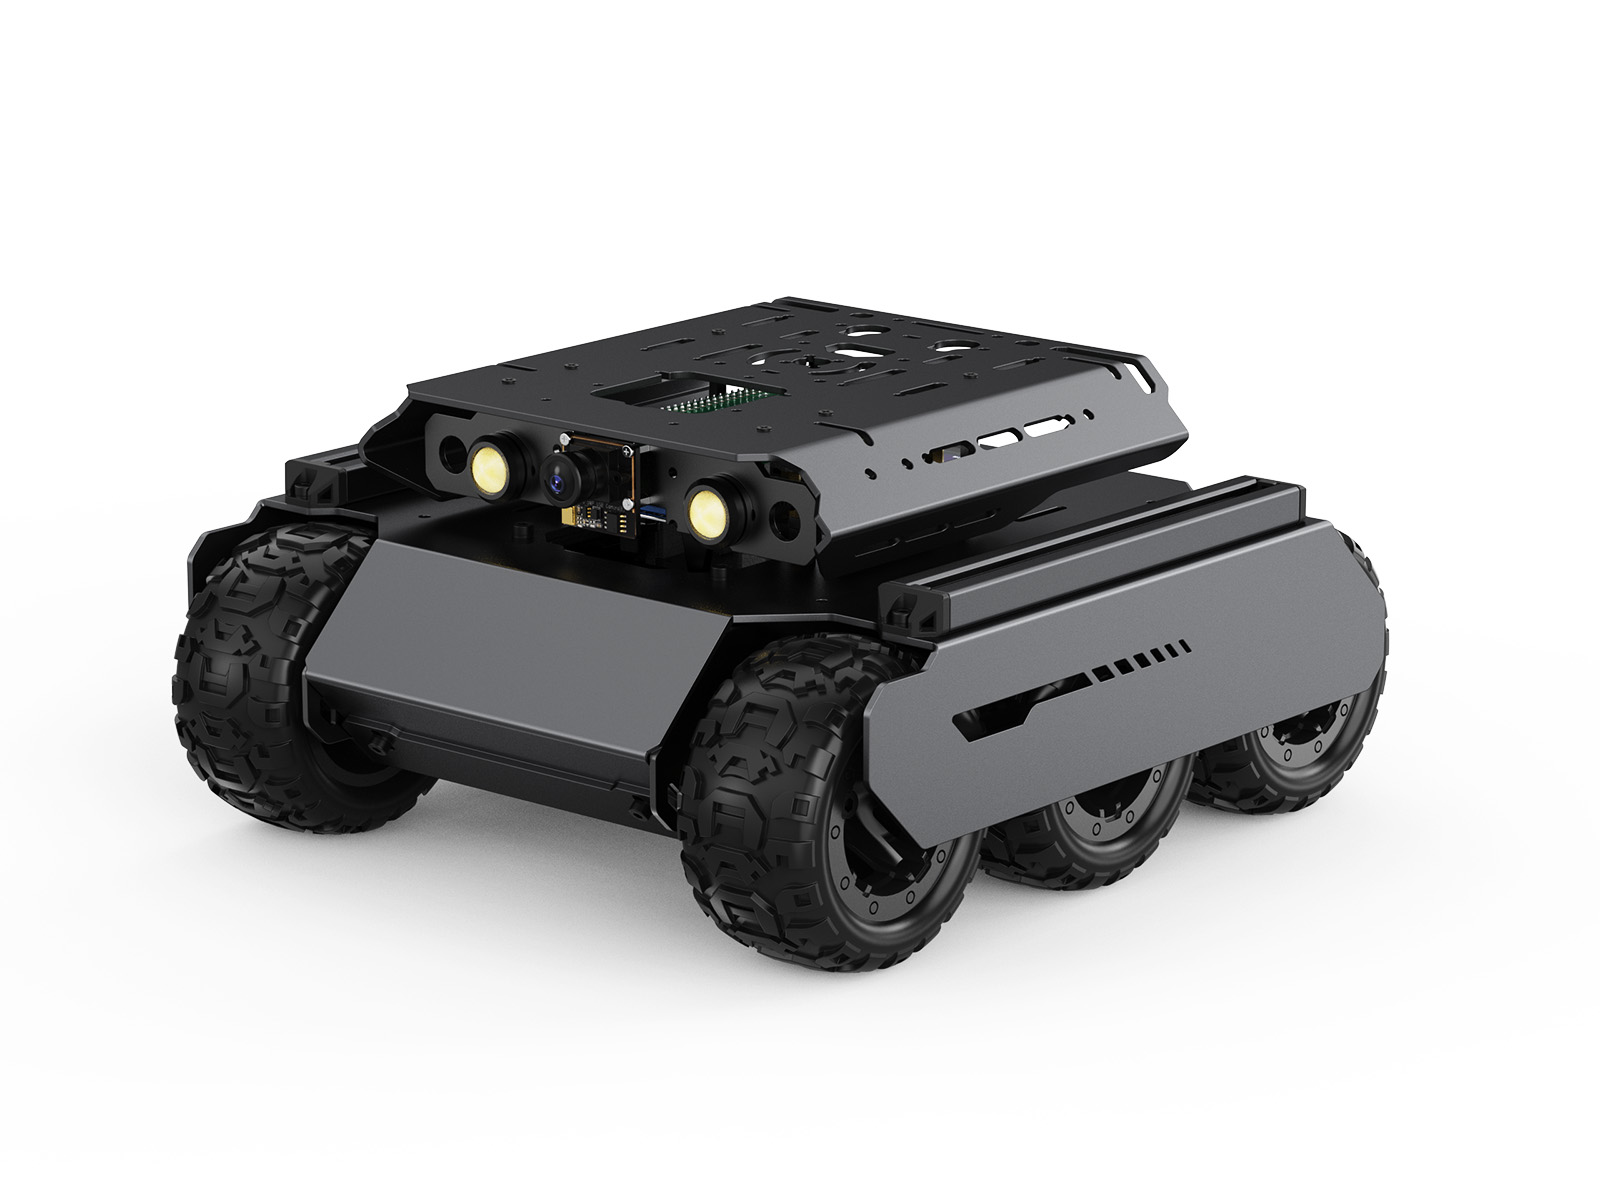 UGV Rover四驱六轮开源移动机器人 双脑架构 机器视觉 交互式教程 高性能灵活可扩展 金属架构 含树莓派5 不含云台